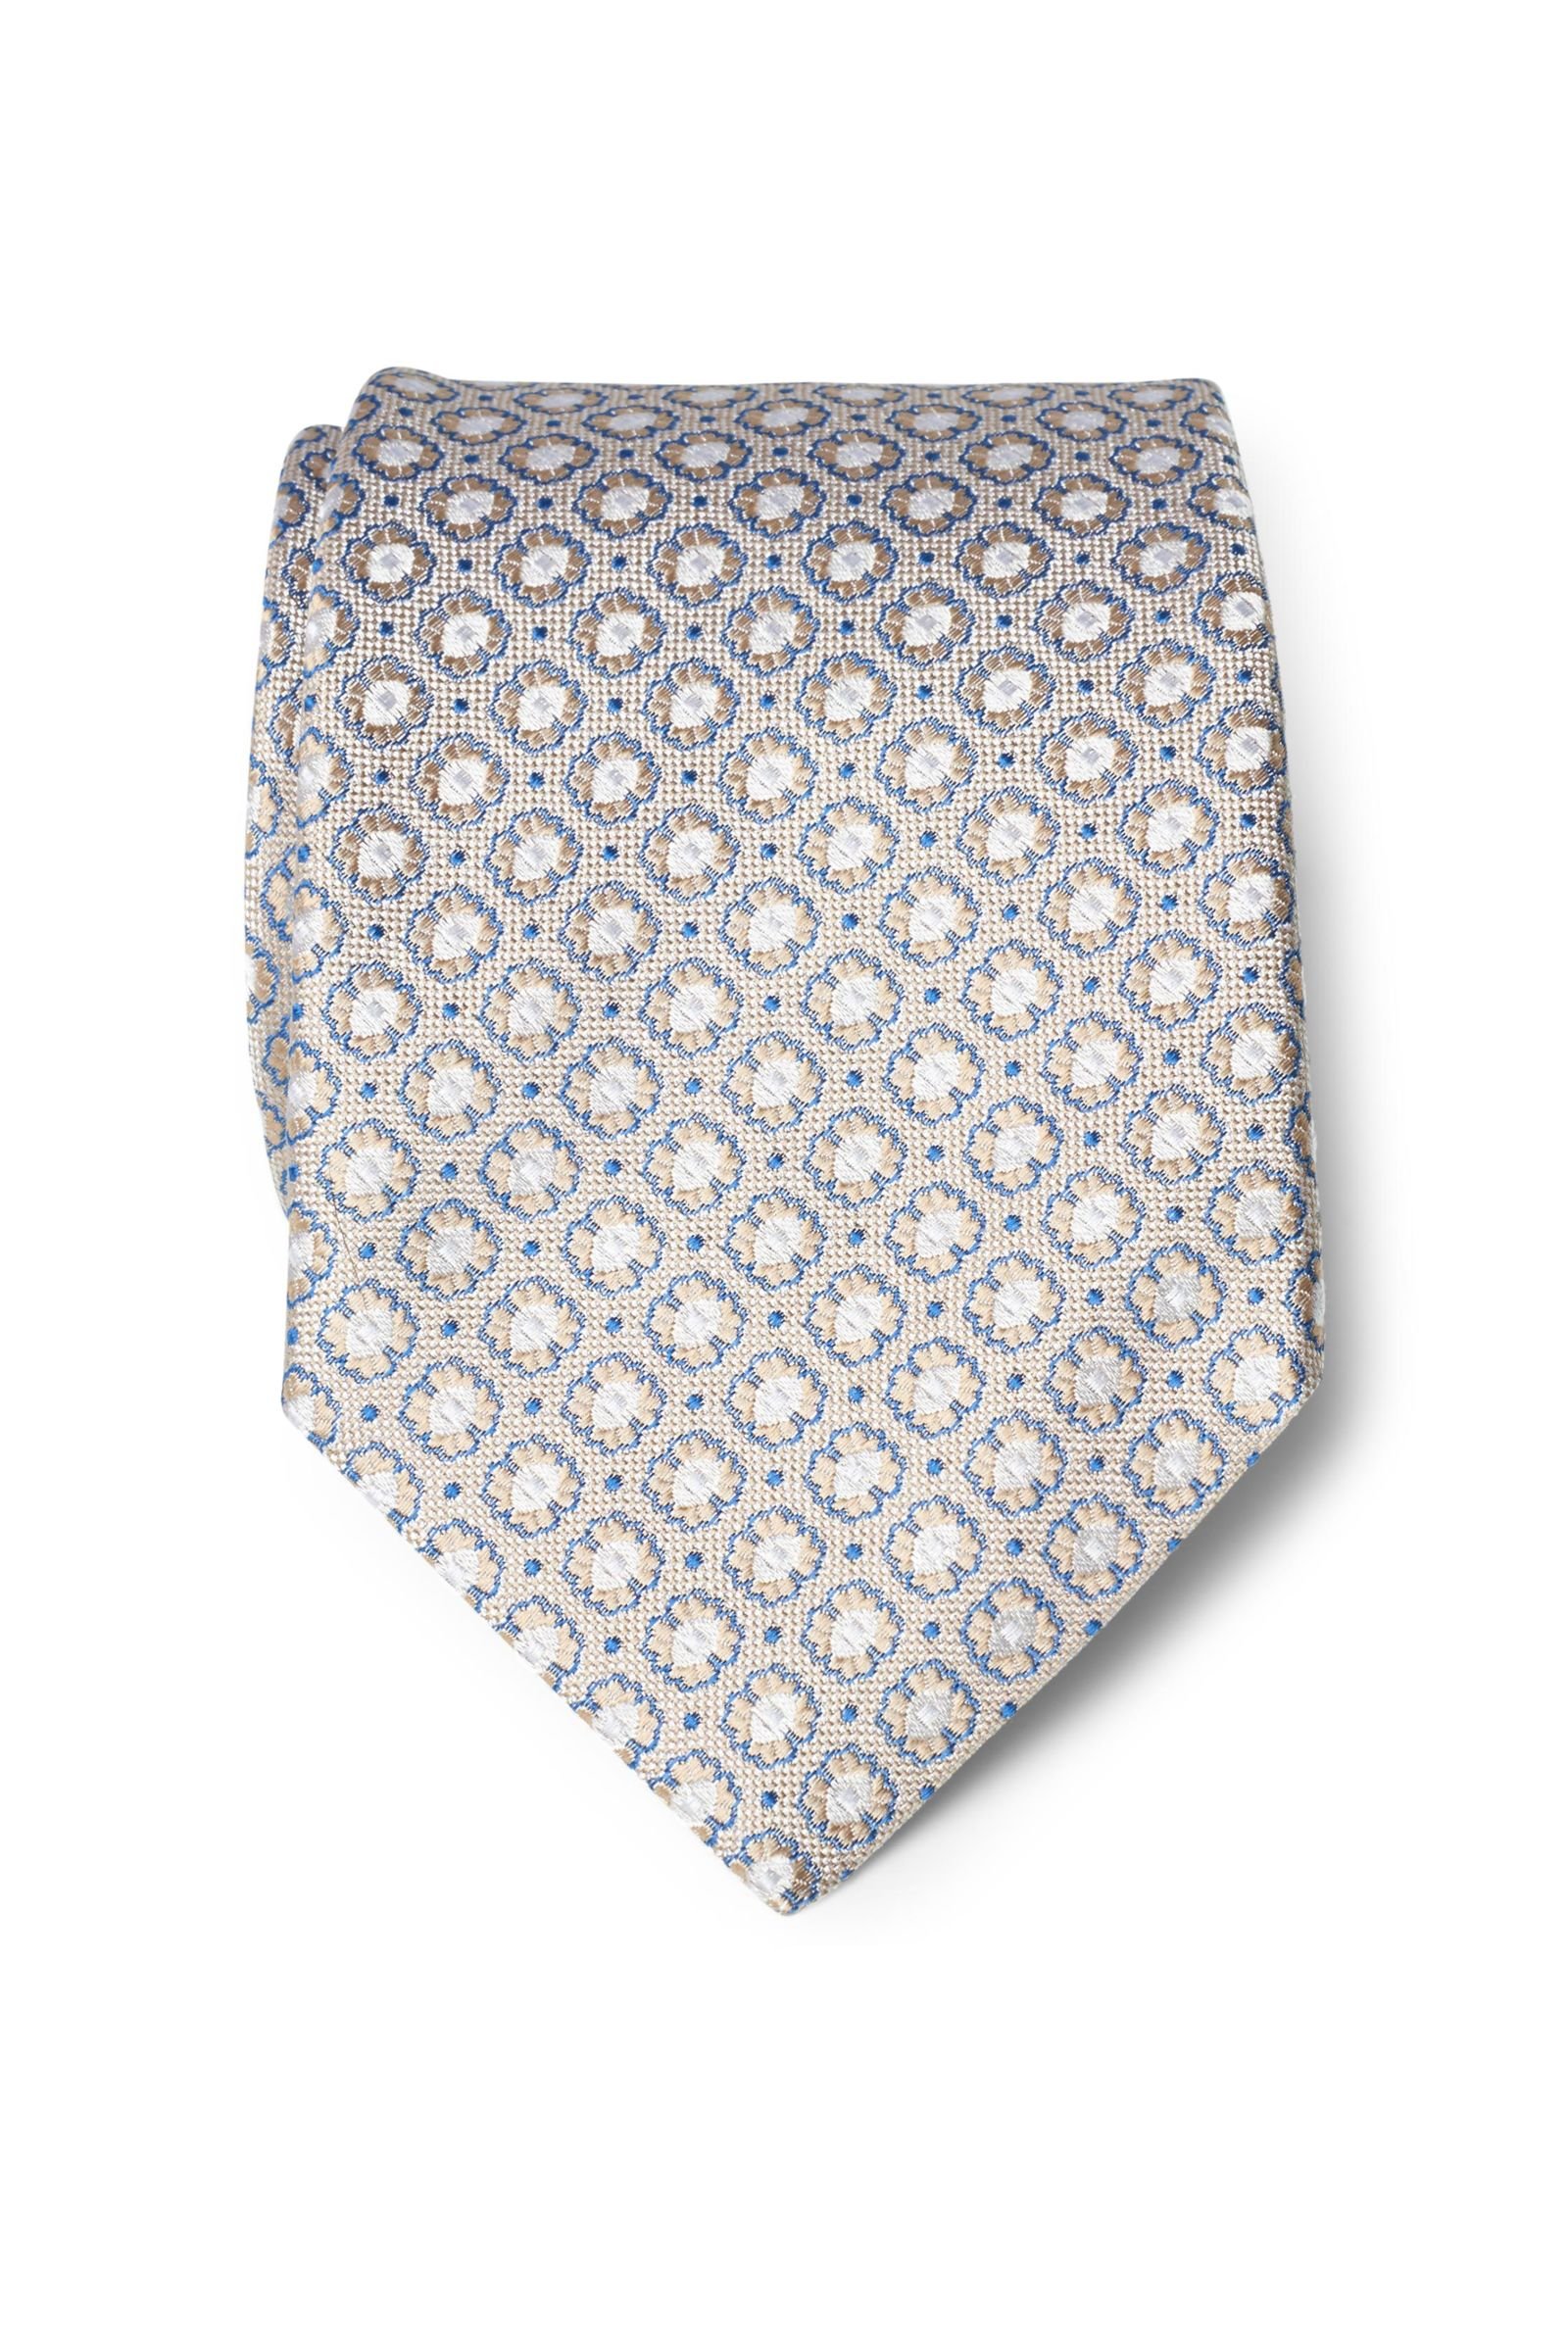 Silk tie beige patterned